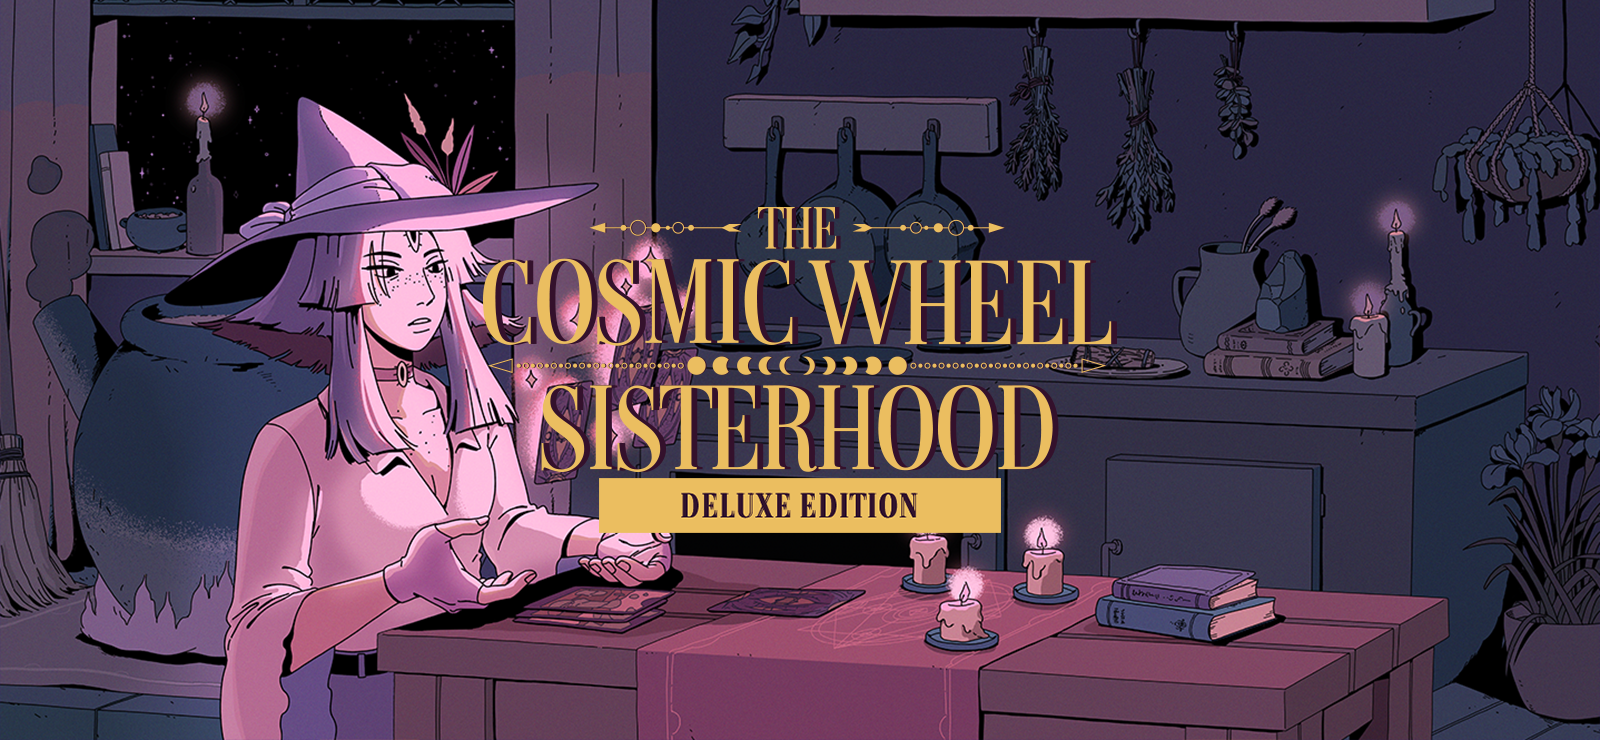 The Cosmic Wheel Sisterhood - Deluxe Edition